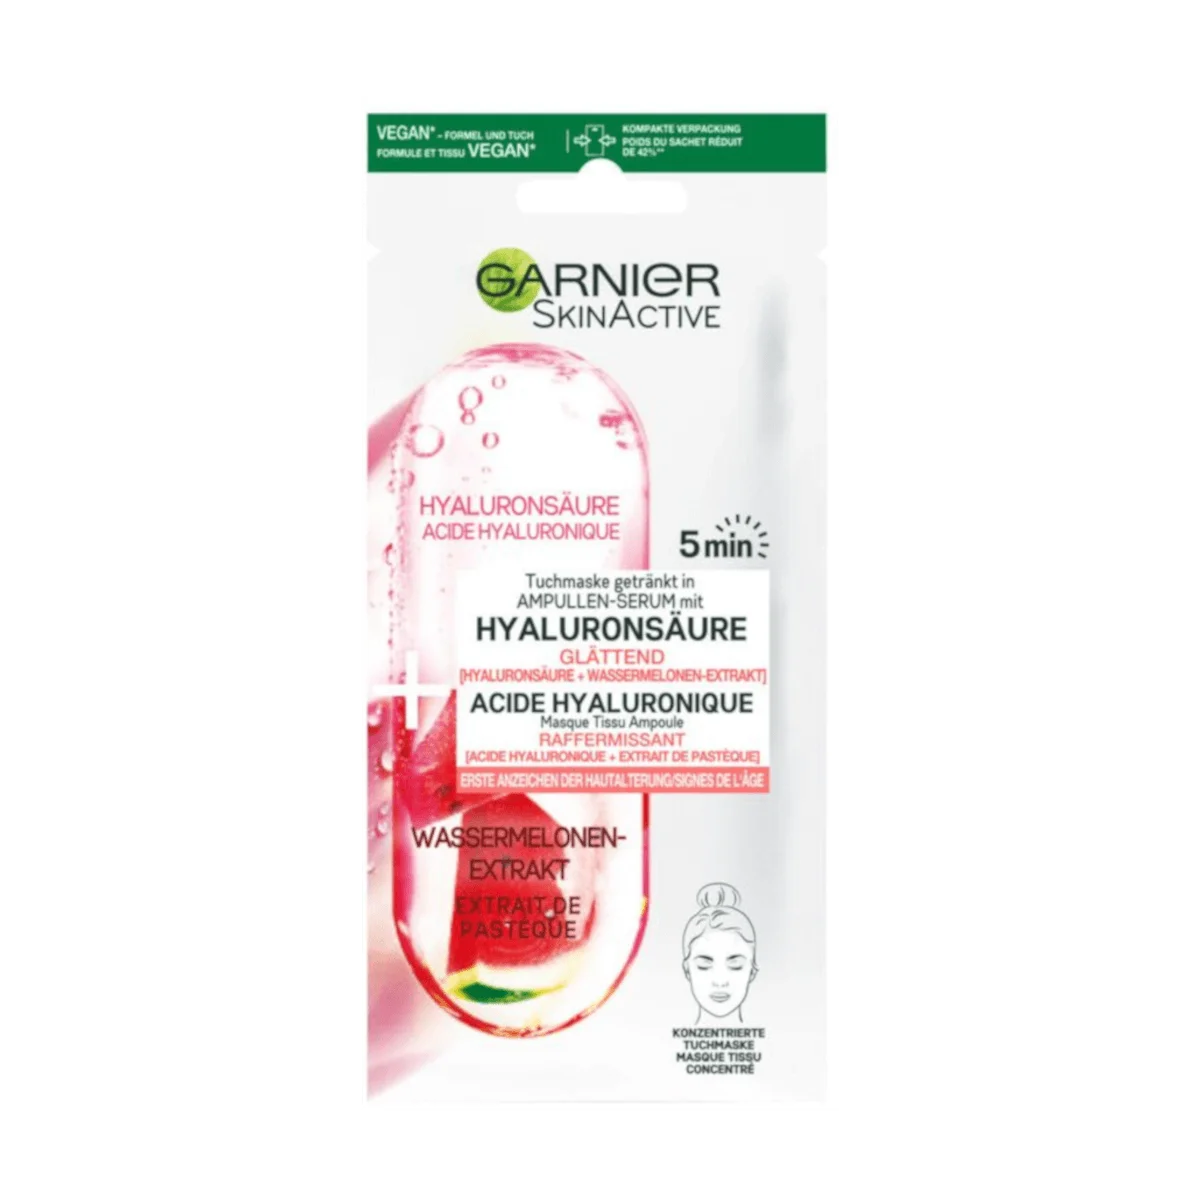 Garnier SkinActive Tuchmaske mit Hyaluronsäure und Wassermelonen-Extrakt, 1 Stk